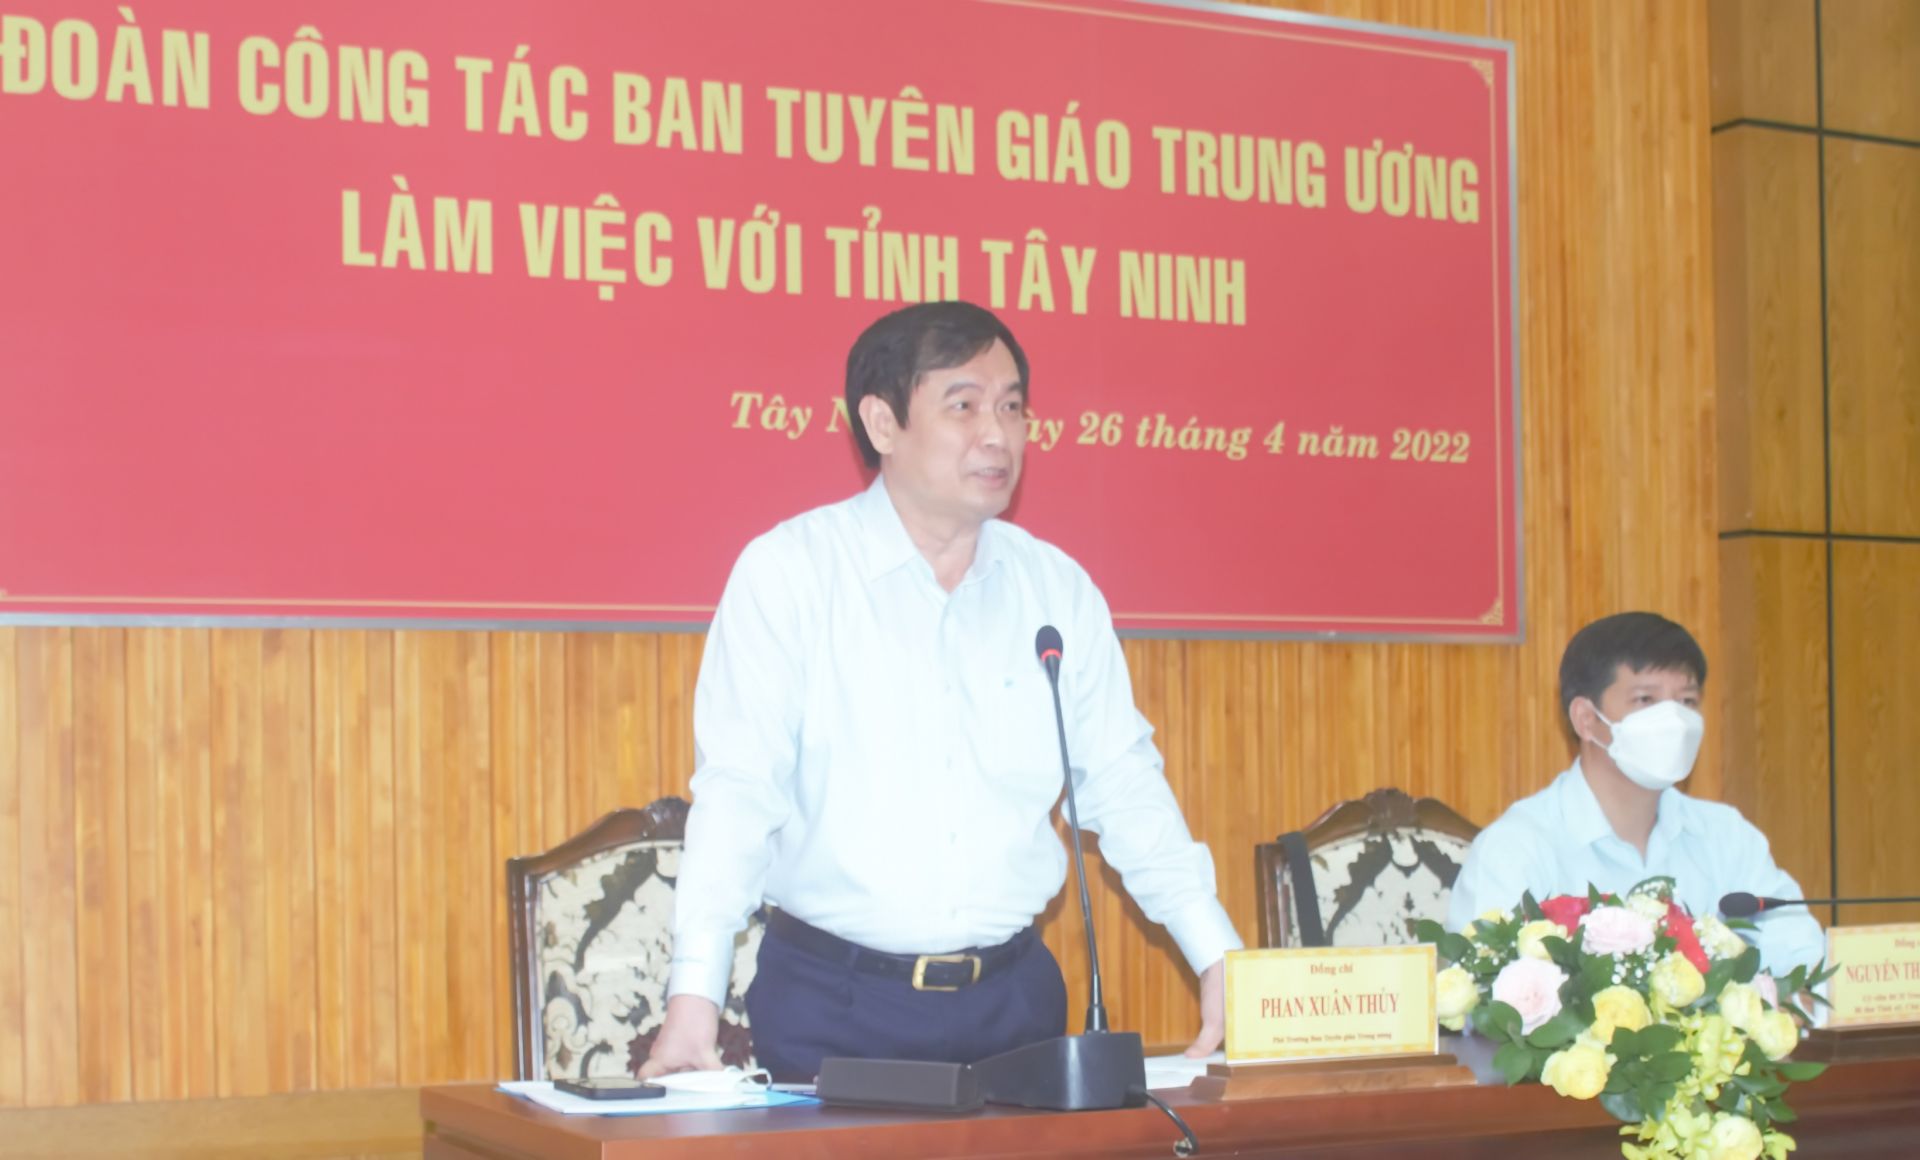 Điểm báo in Tây Ninh ngày 27.04.2022